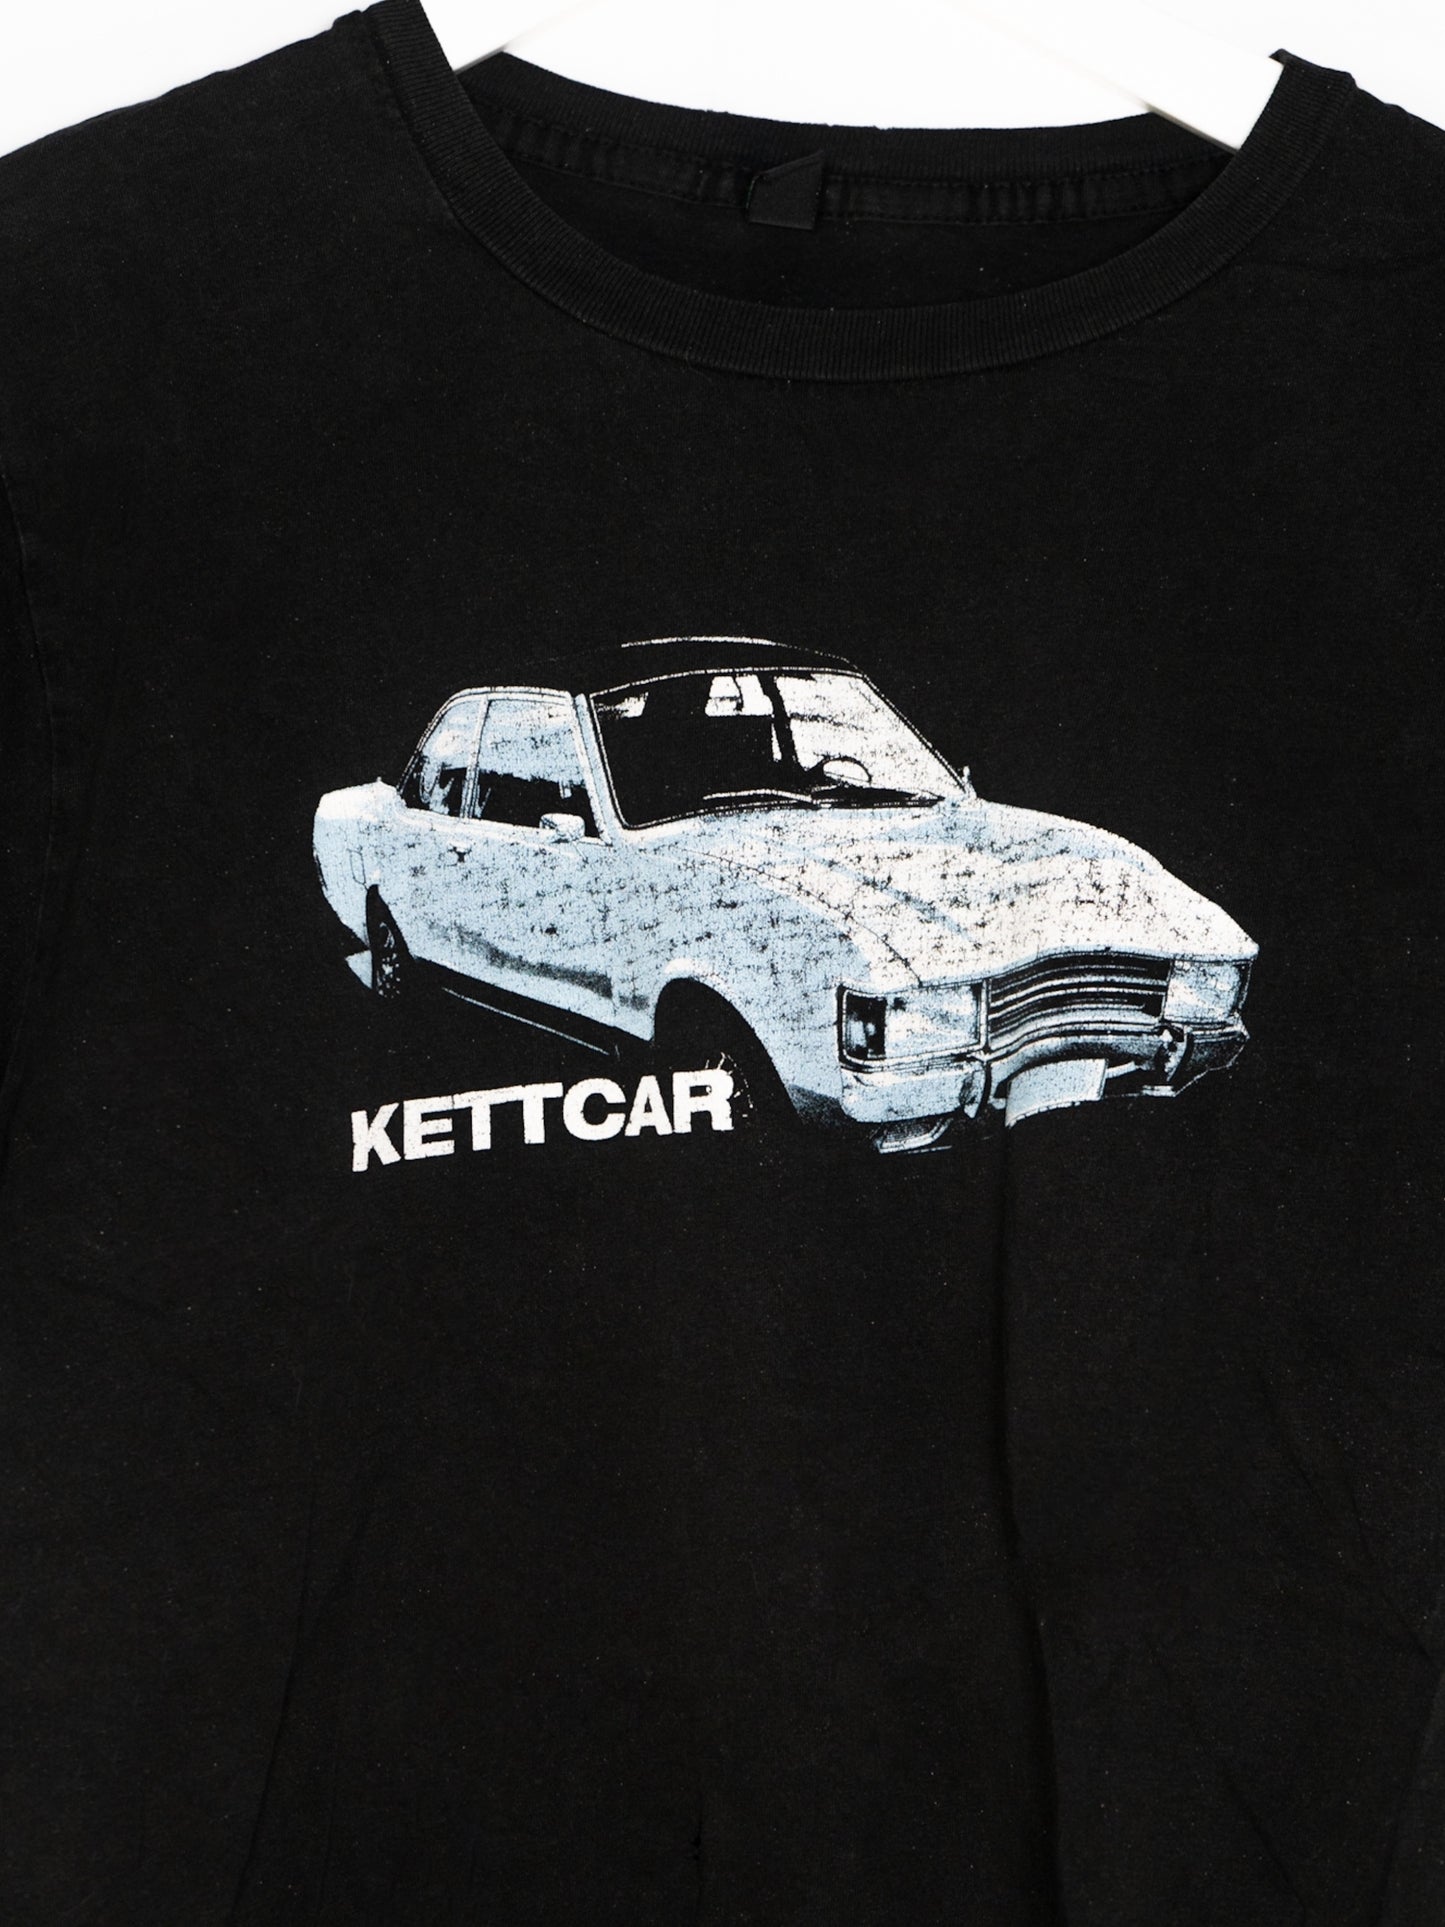 Kettcar Vintage Shirt